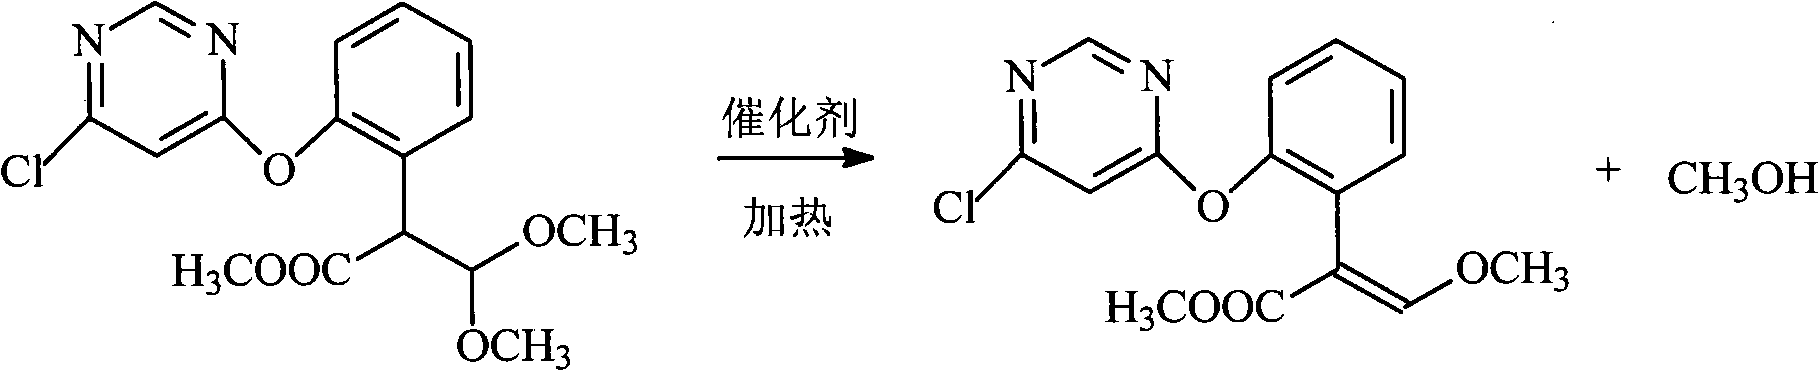 Preparation method of (E)-2-[2-(6-pyrimidine-4-yloxy) phenyl]-3-methoxyacrylate